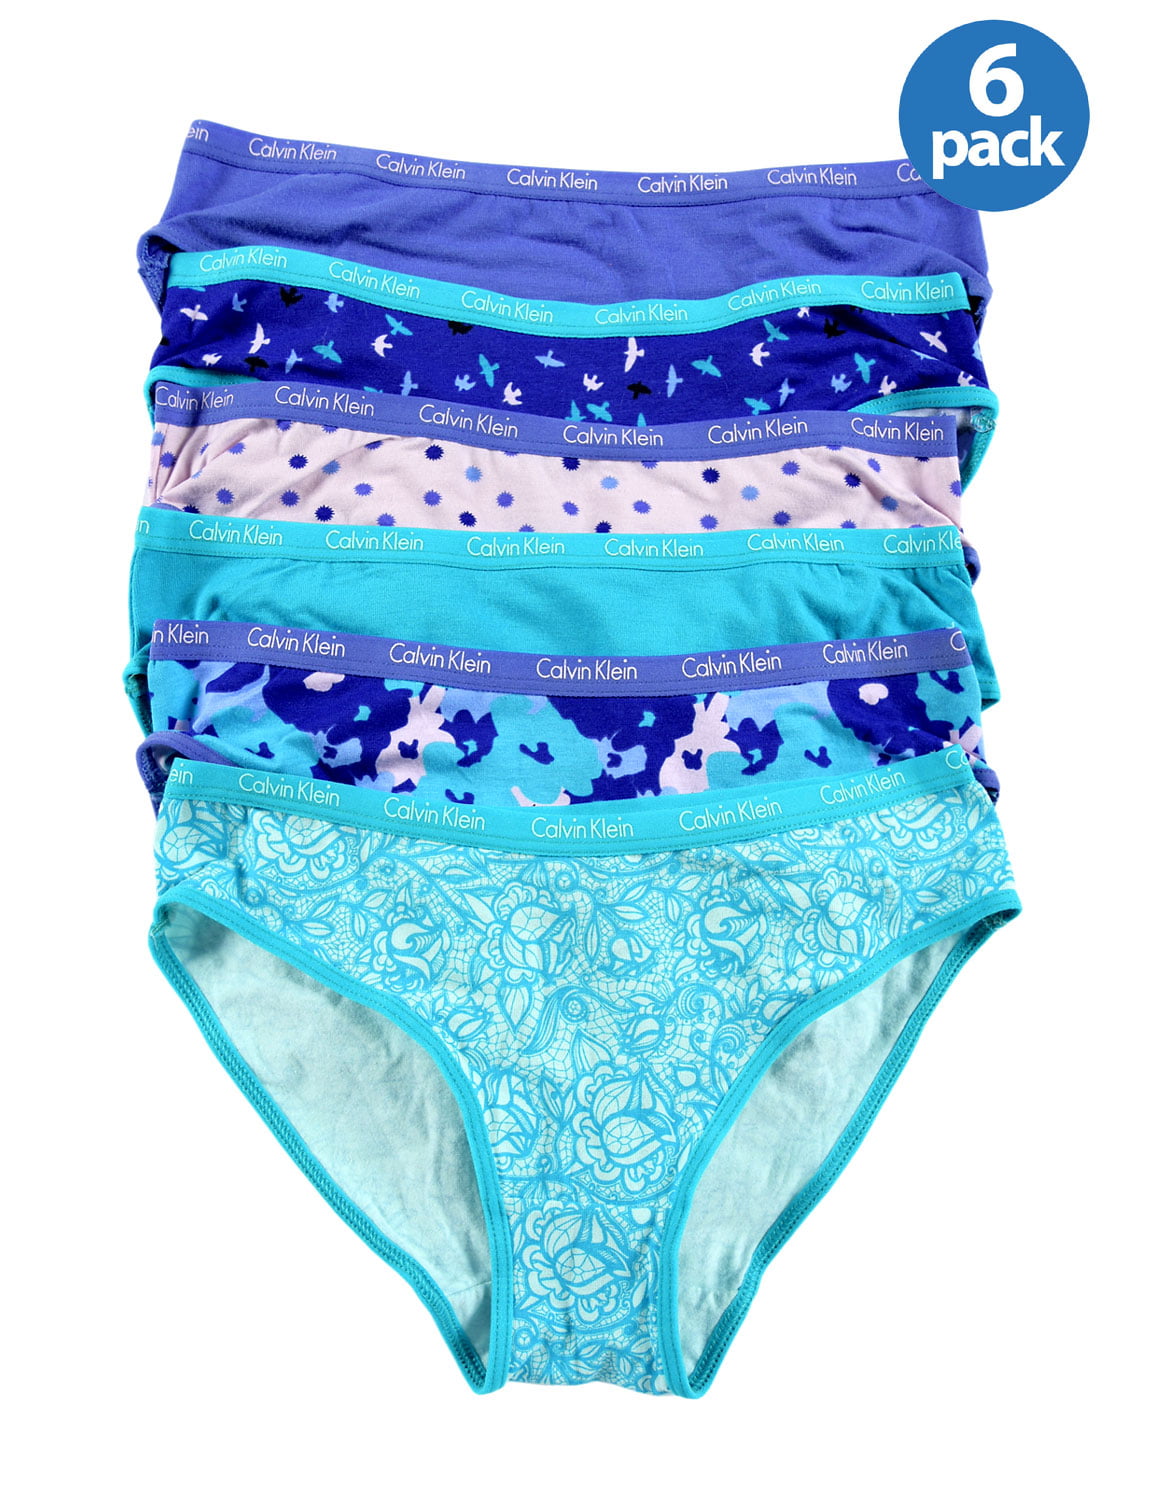 CALVIN KLEIN Girls Comfort Stretch Bikinis Underwear Blue Assortment 6 ...